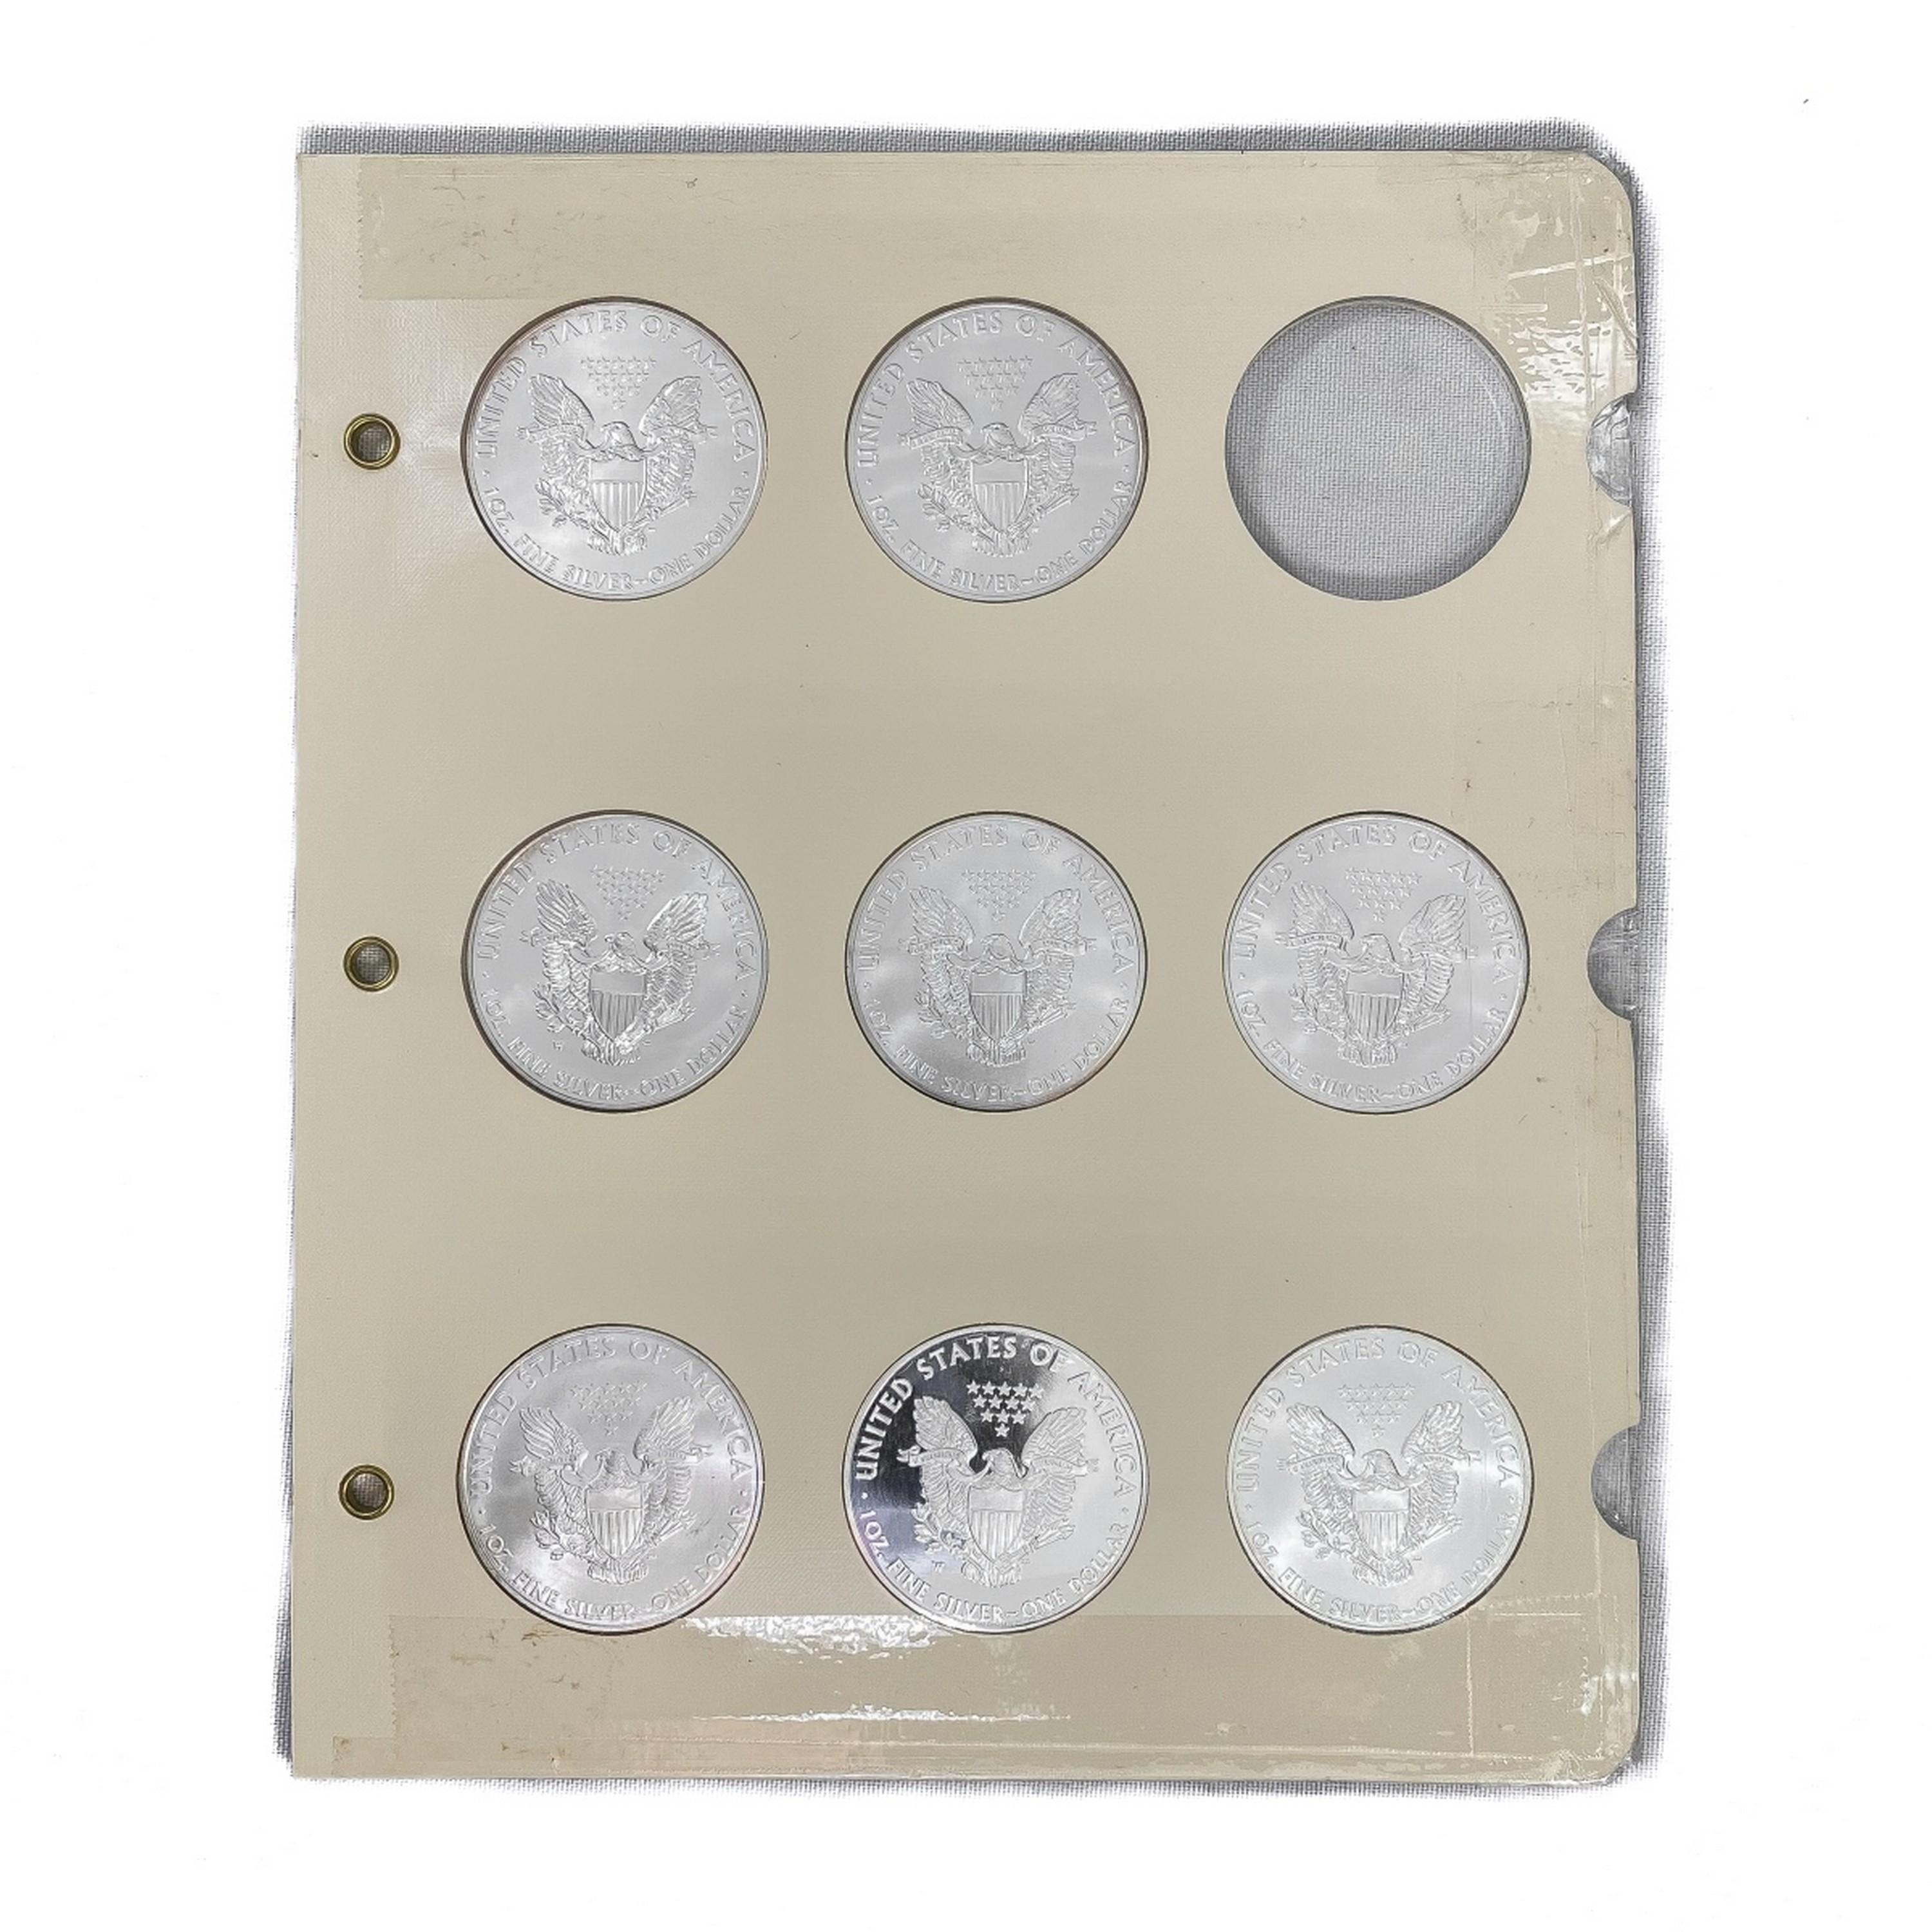 1986-2015 American 1oz Silver Eagle Book (35 Coins